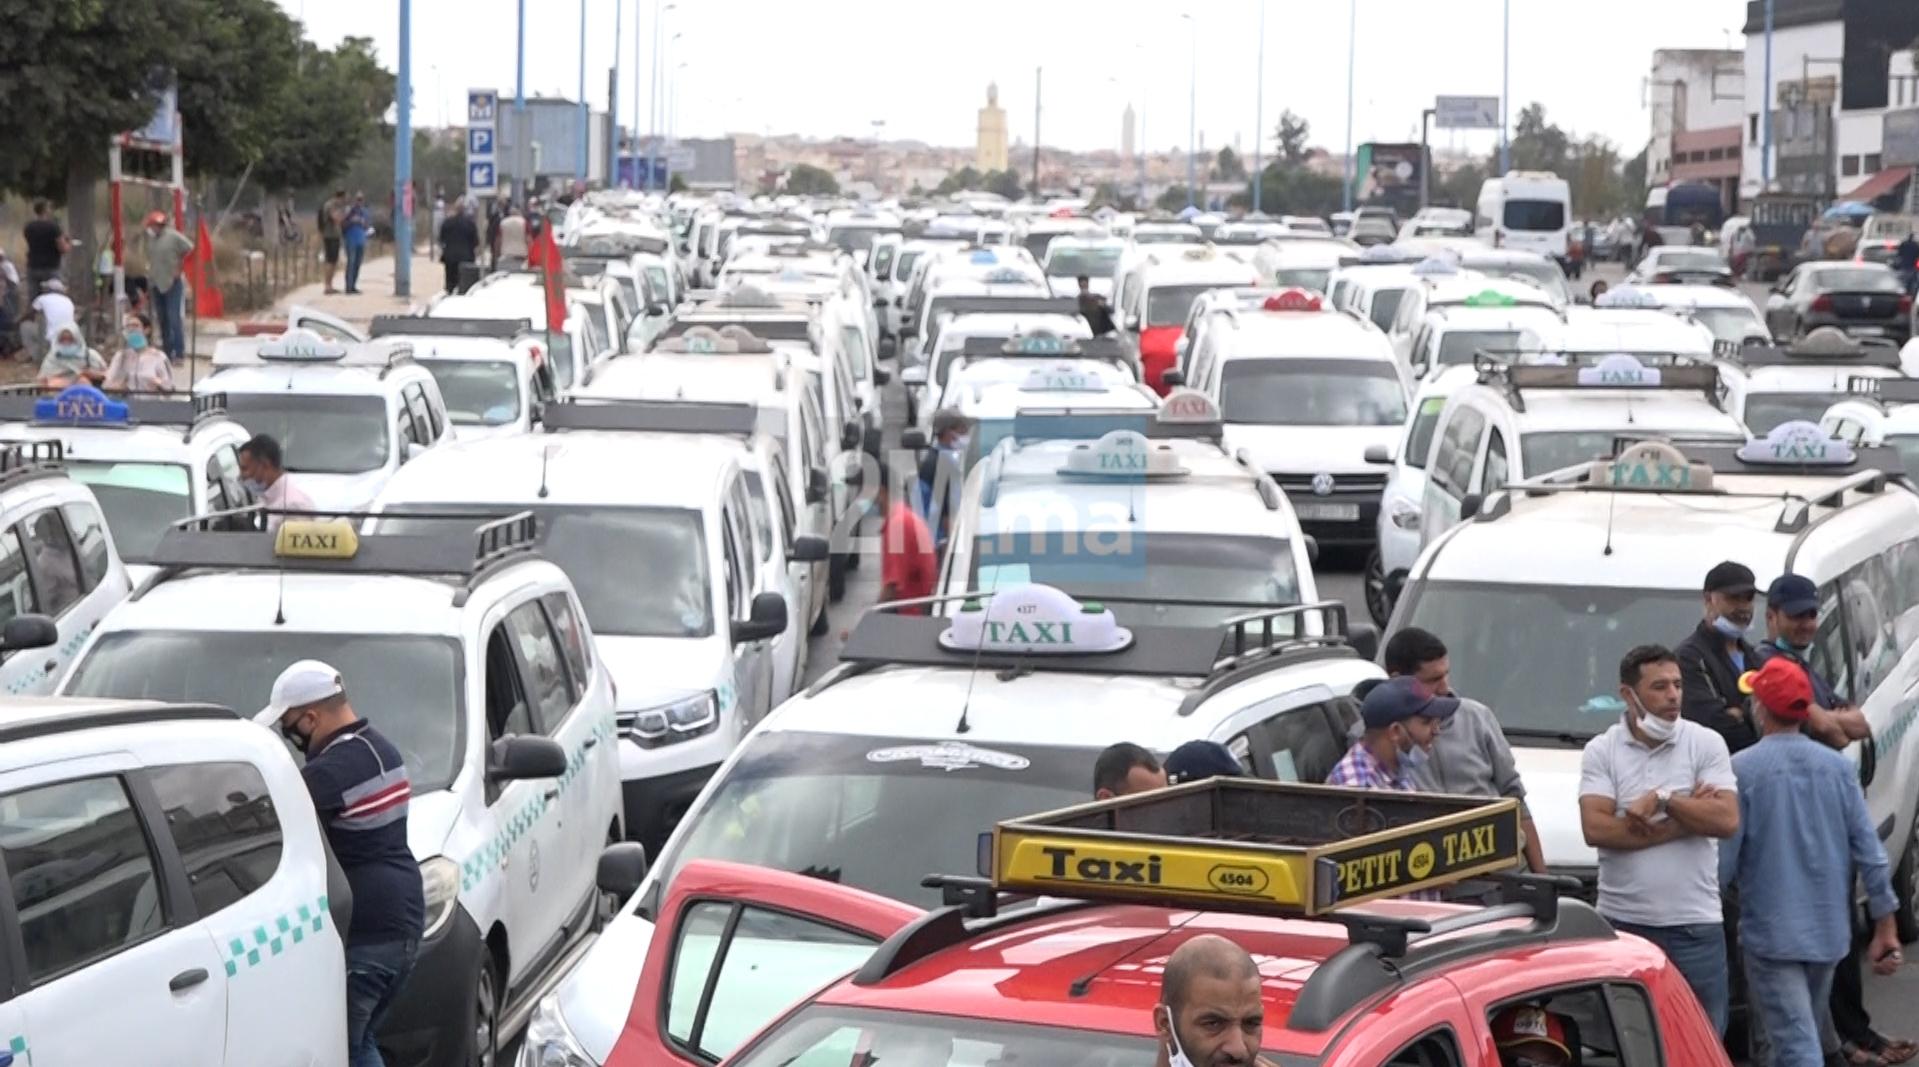 ثمان نقابات لسيارات الأجرة تحتج أمام الداخلية بسبب “التطبيقات” ومطالبة بتفعيل “الكازوال المهني”